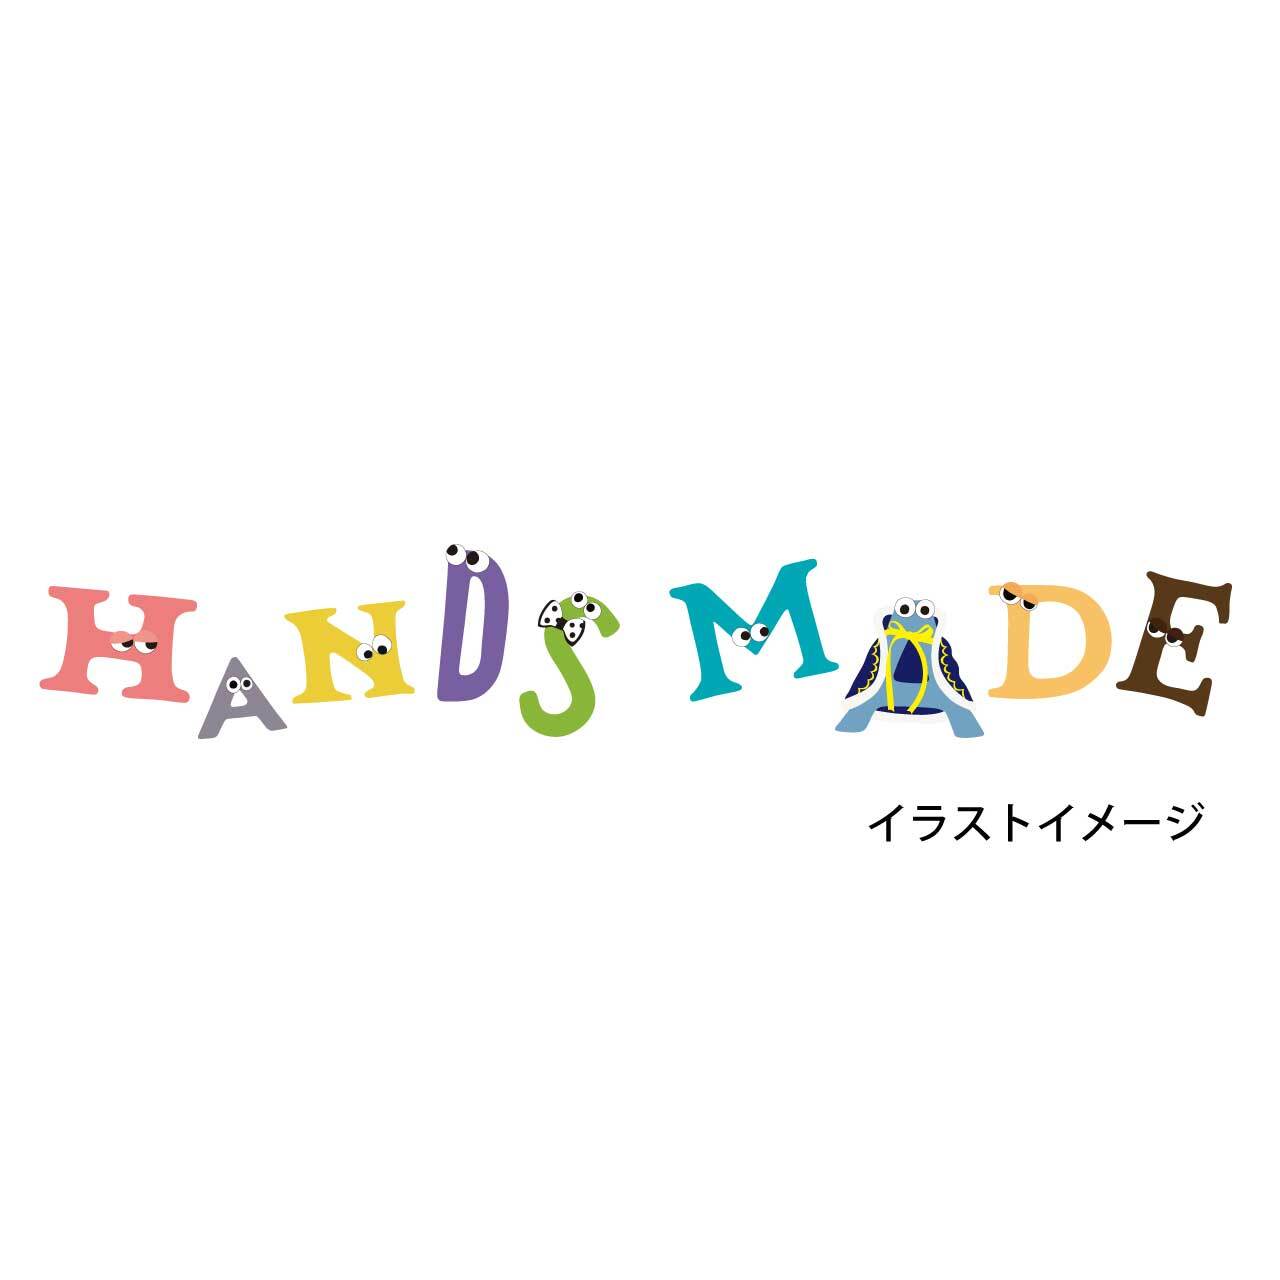 ペンライト（HANDS MADE Ver.） | 中澤卓也Official Store powered by BASE